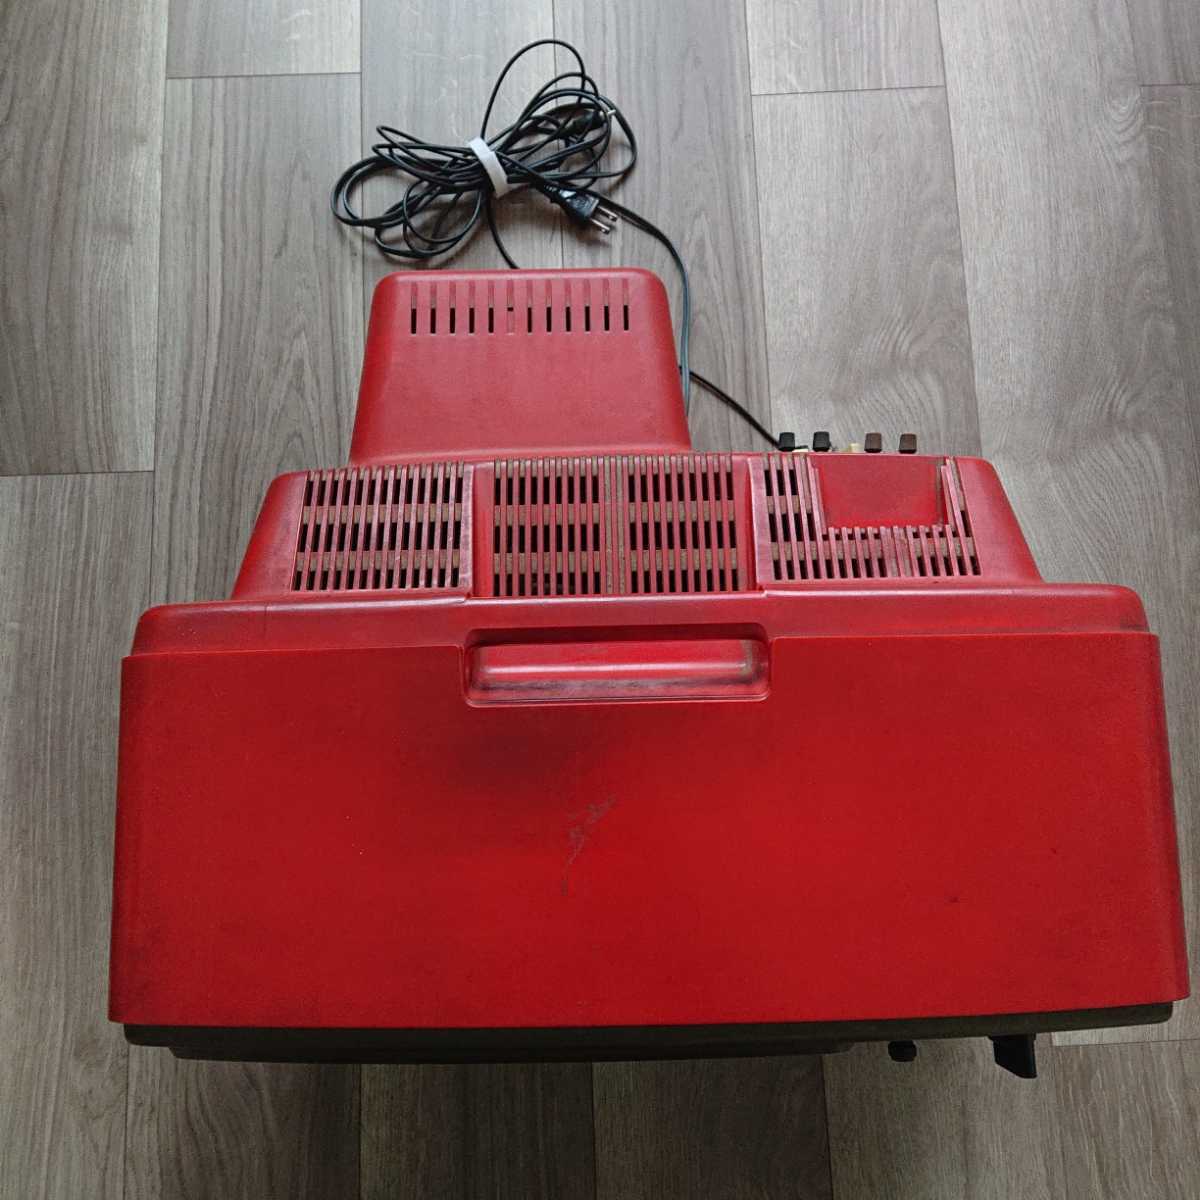 昭和レトロ 1977年製造 カラーテレビ パナソニック ブラウン管 赤色 レッド 13型 パナカラー 松下電器 中古 アンティーク ビンテージ レア